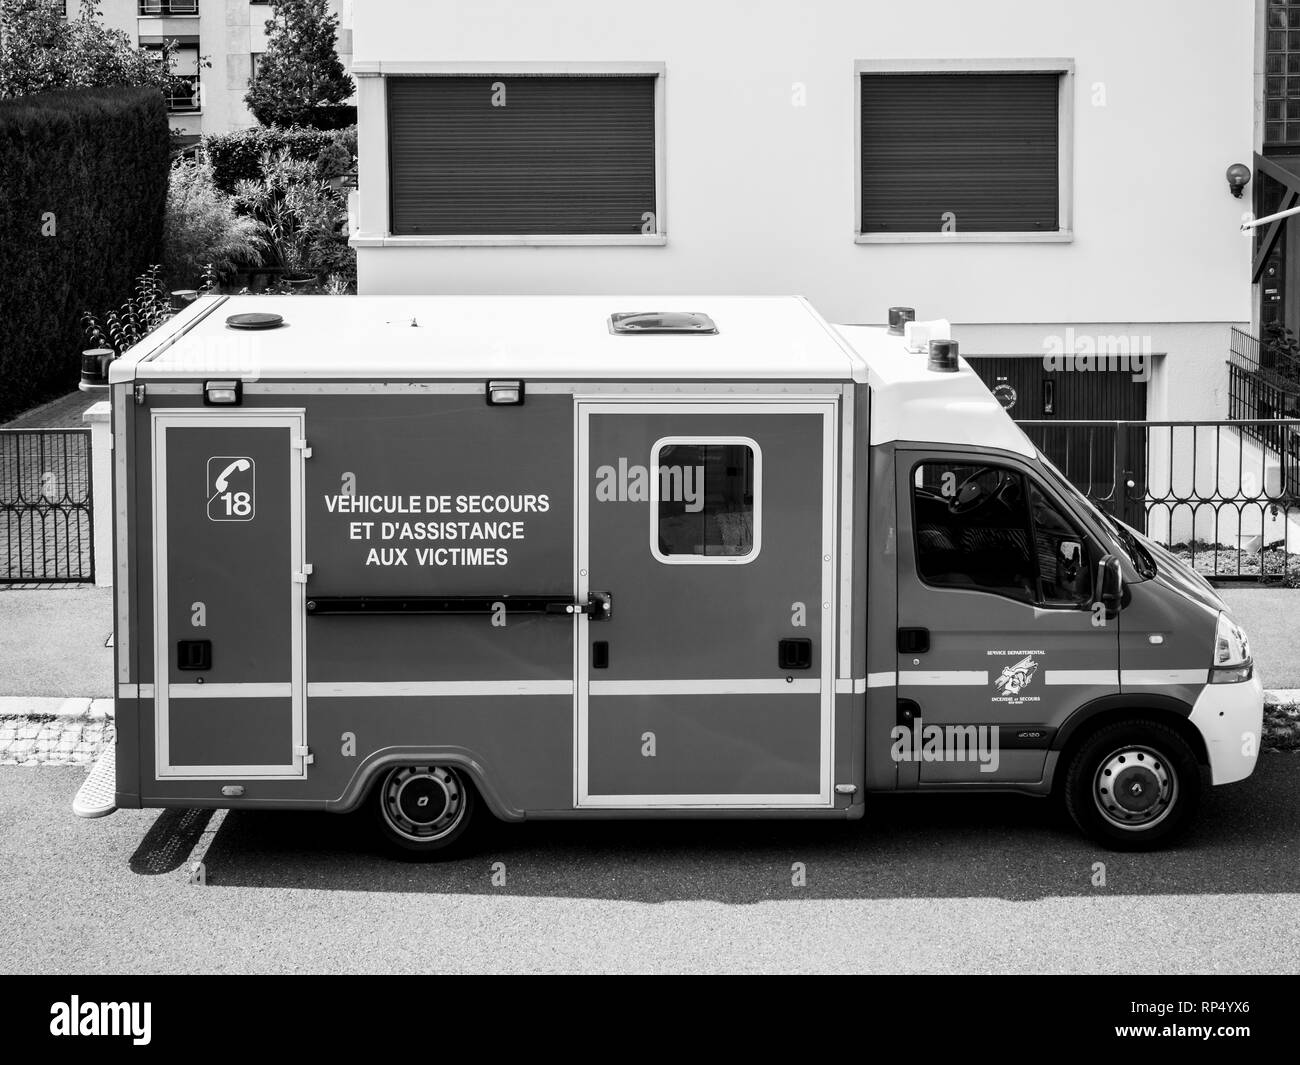 París, Francia - 26 Aug, 2017: Vista desde arriba del servicio de emergencia ayuda a los paramédicos van - estacionado en ciudad francesa - blanco y negro Foto de stock